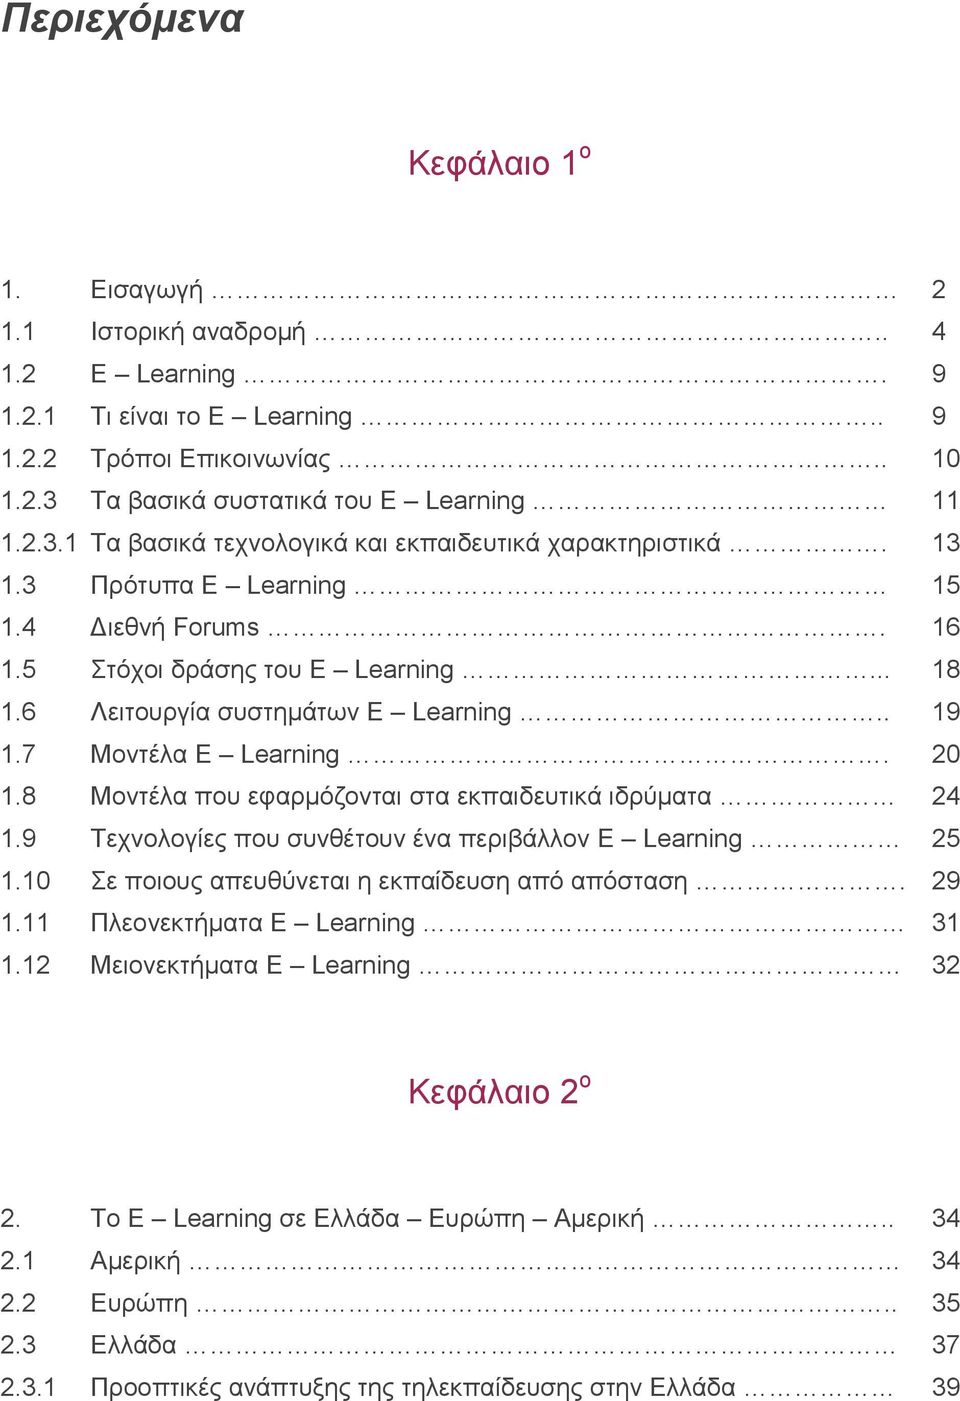 6 Λειτουργία συστημάτων E Learning.. 19 1.7 Μοντέλα E Learning. 20 1.8 Μοντέλα που εφαρμόζονται στα εκπαιδευτικά ιδρύματα 24 1.9 Τεχνολογίες που συνθέτουν ένα περιβάλλον E Learning 25 1.